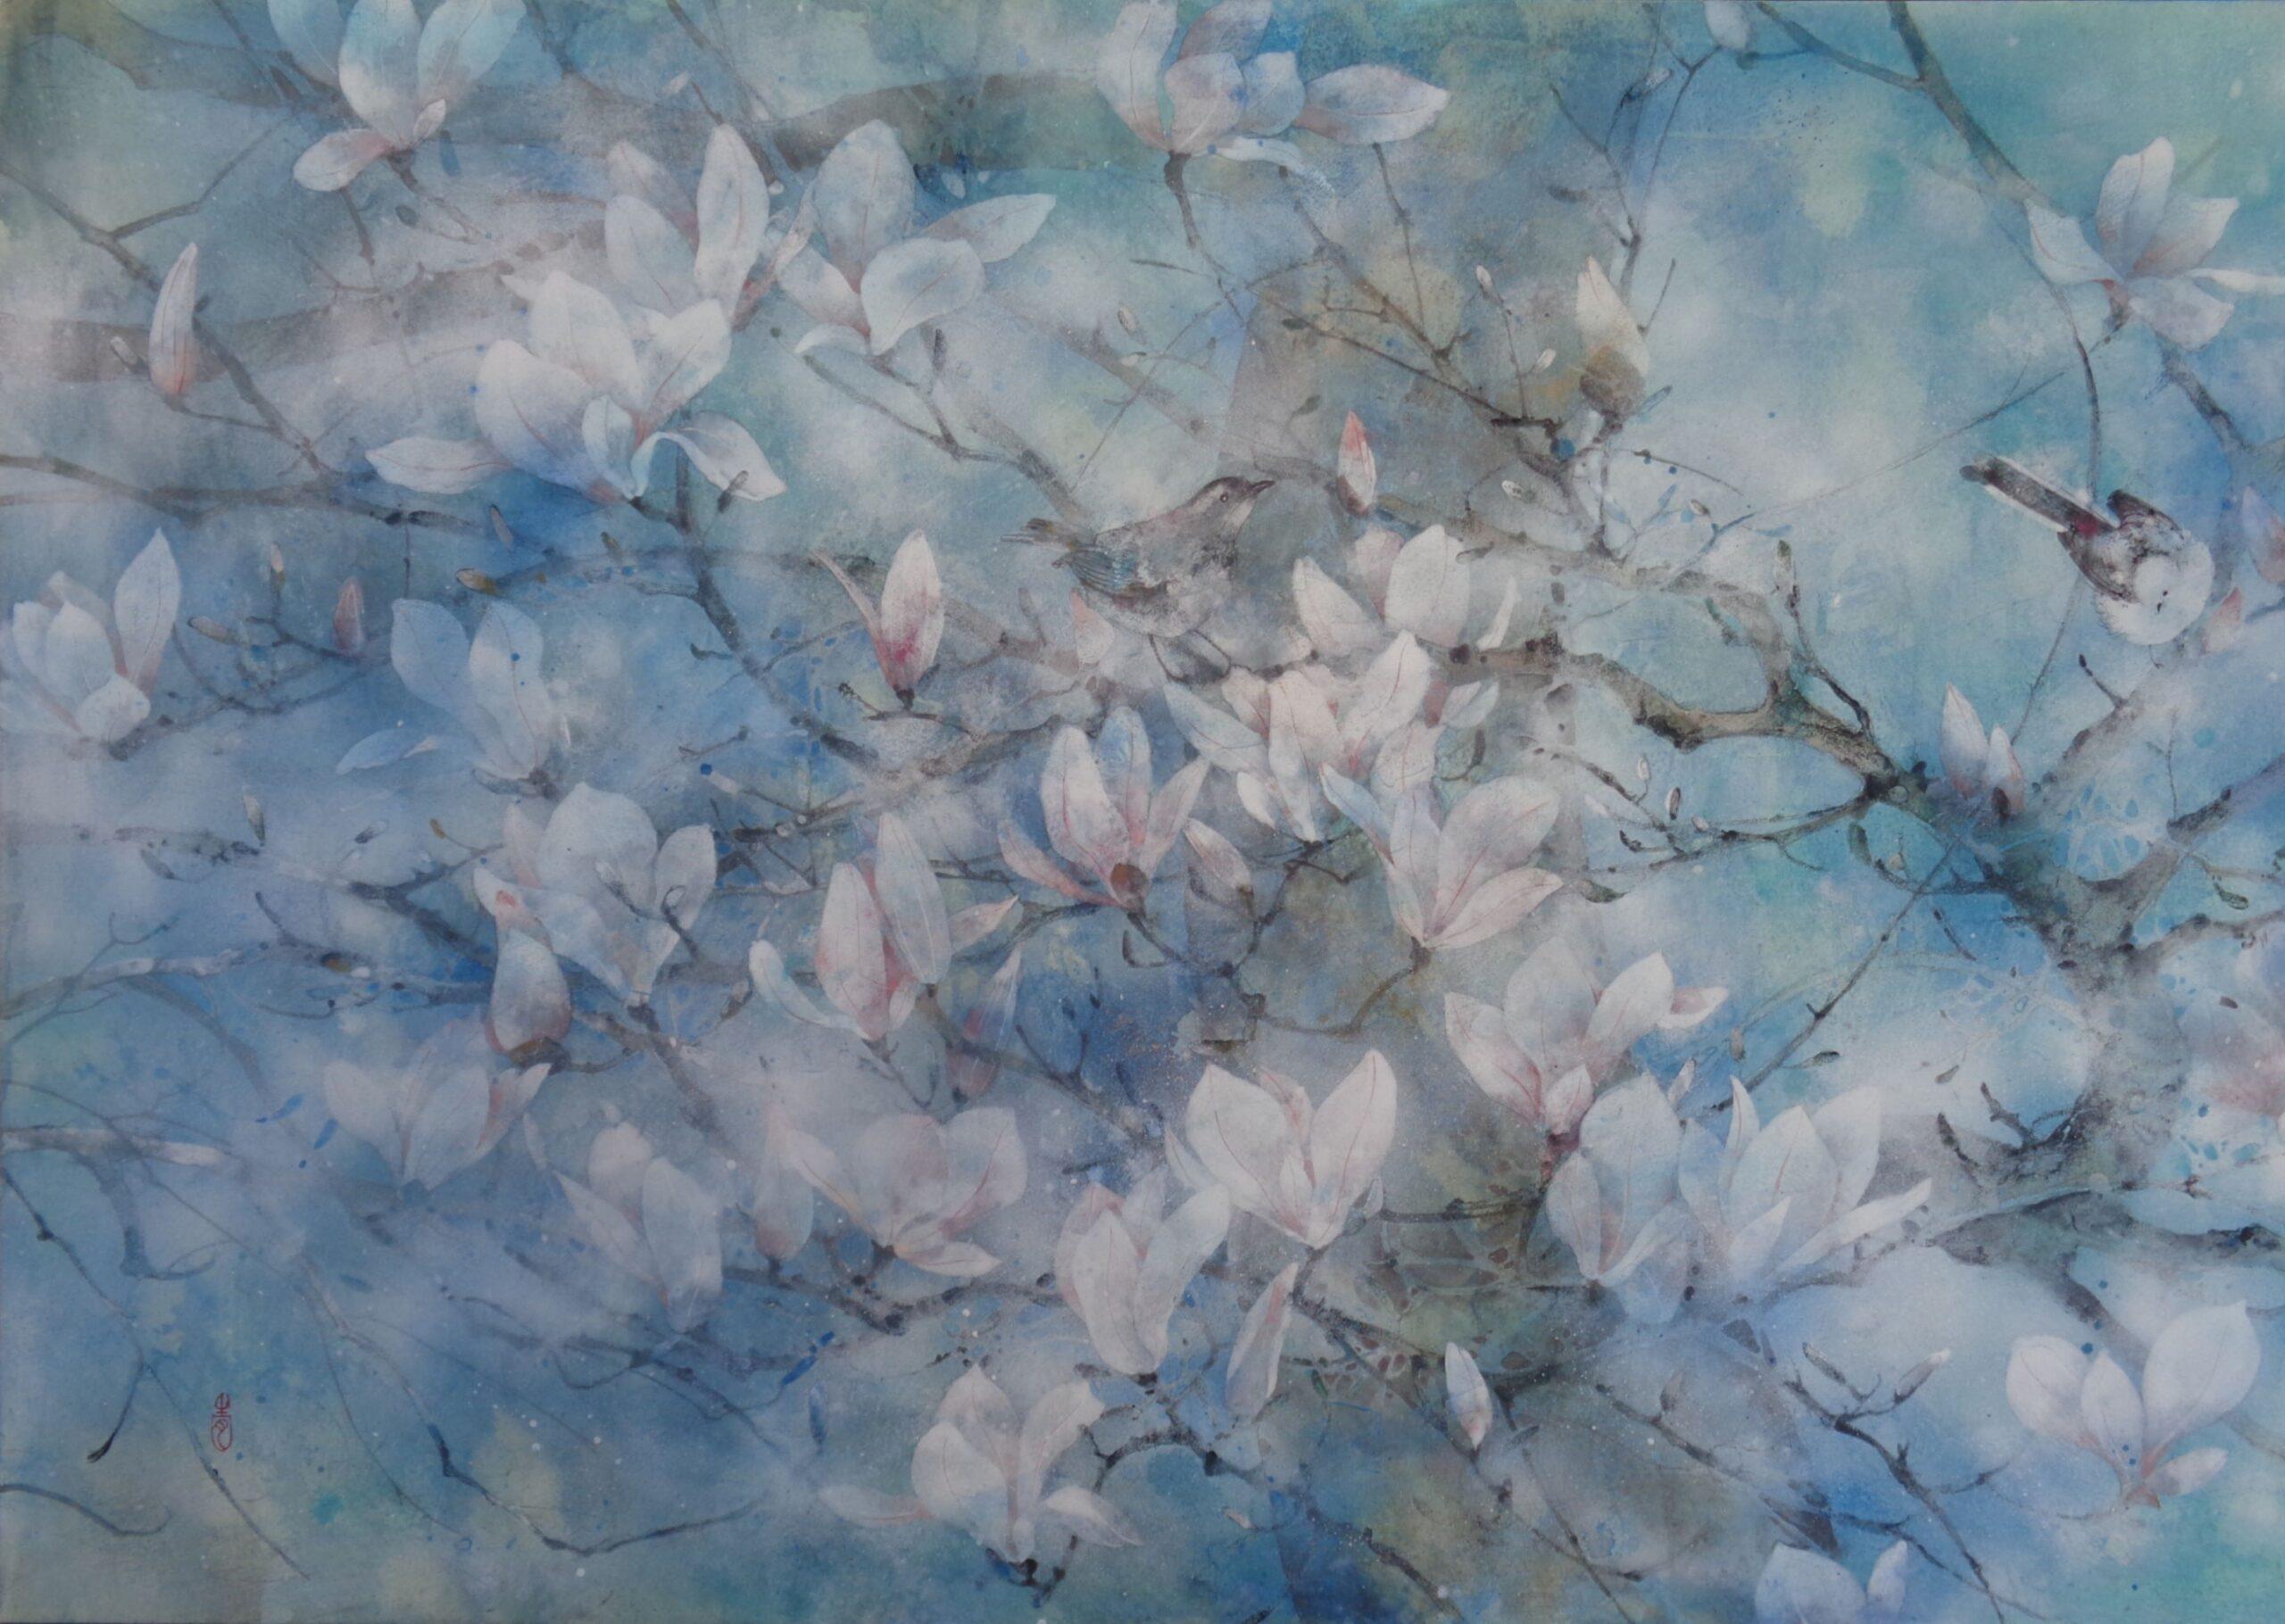 The spring wind von Chen Yiching - Zeitgenössische Nihonga-Malerei, Magnolienblüte